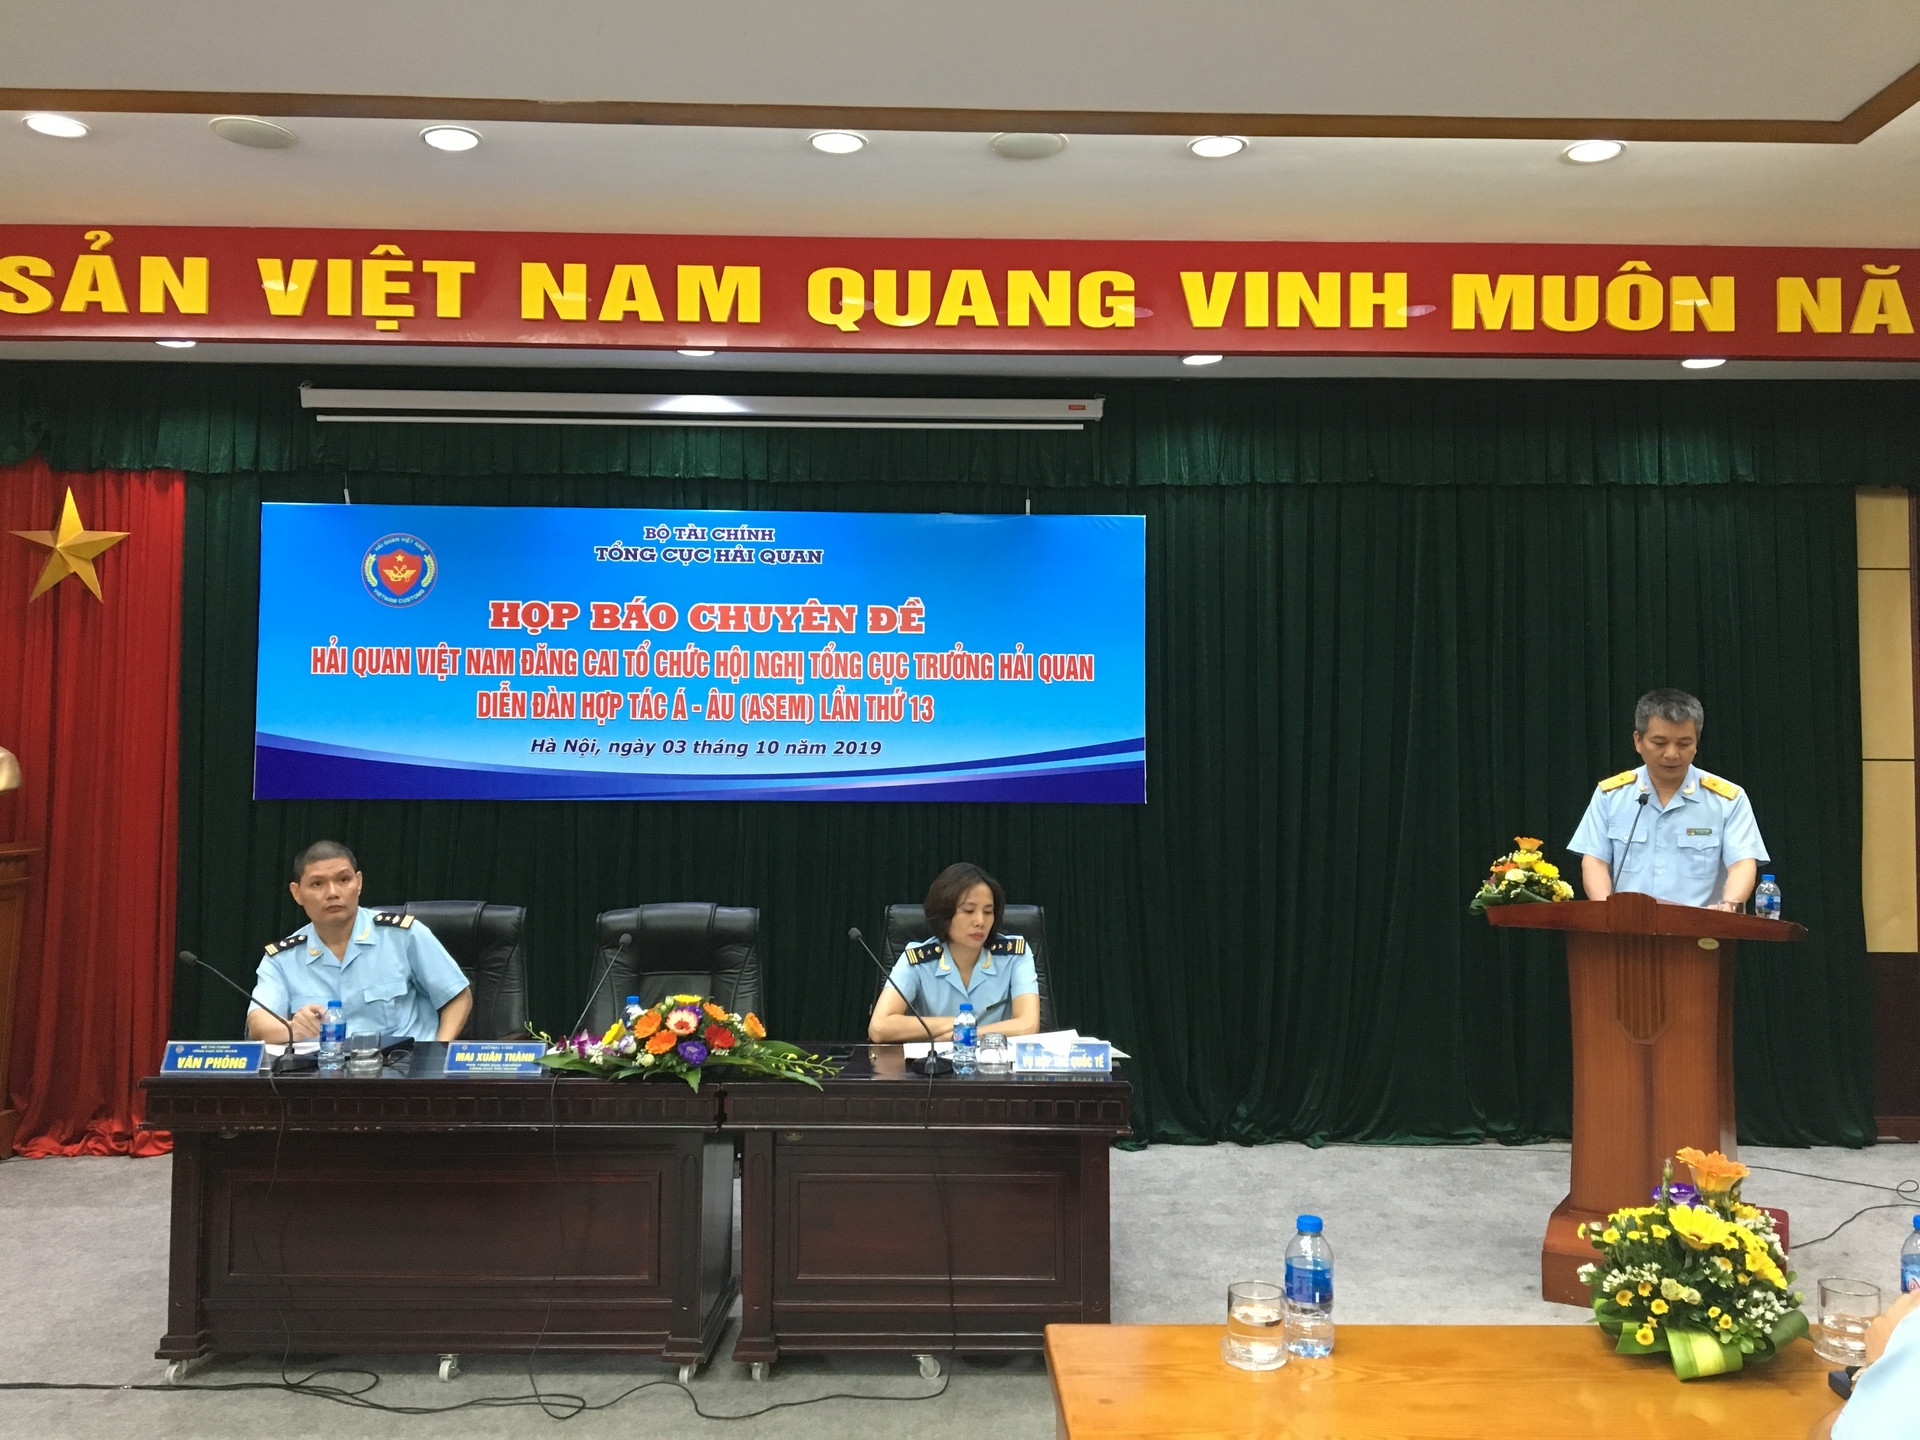 Hải quan Việt Nam đăng cai tổ chức Hội nghị Tổng cục trưởng Hải quan Diễn đàn Hợp tác Á - Âu (ASEM) lần thứ 13